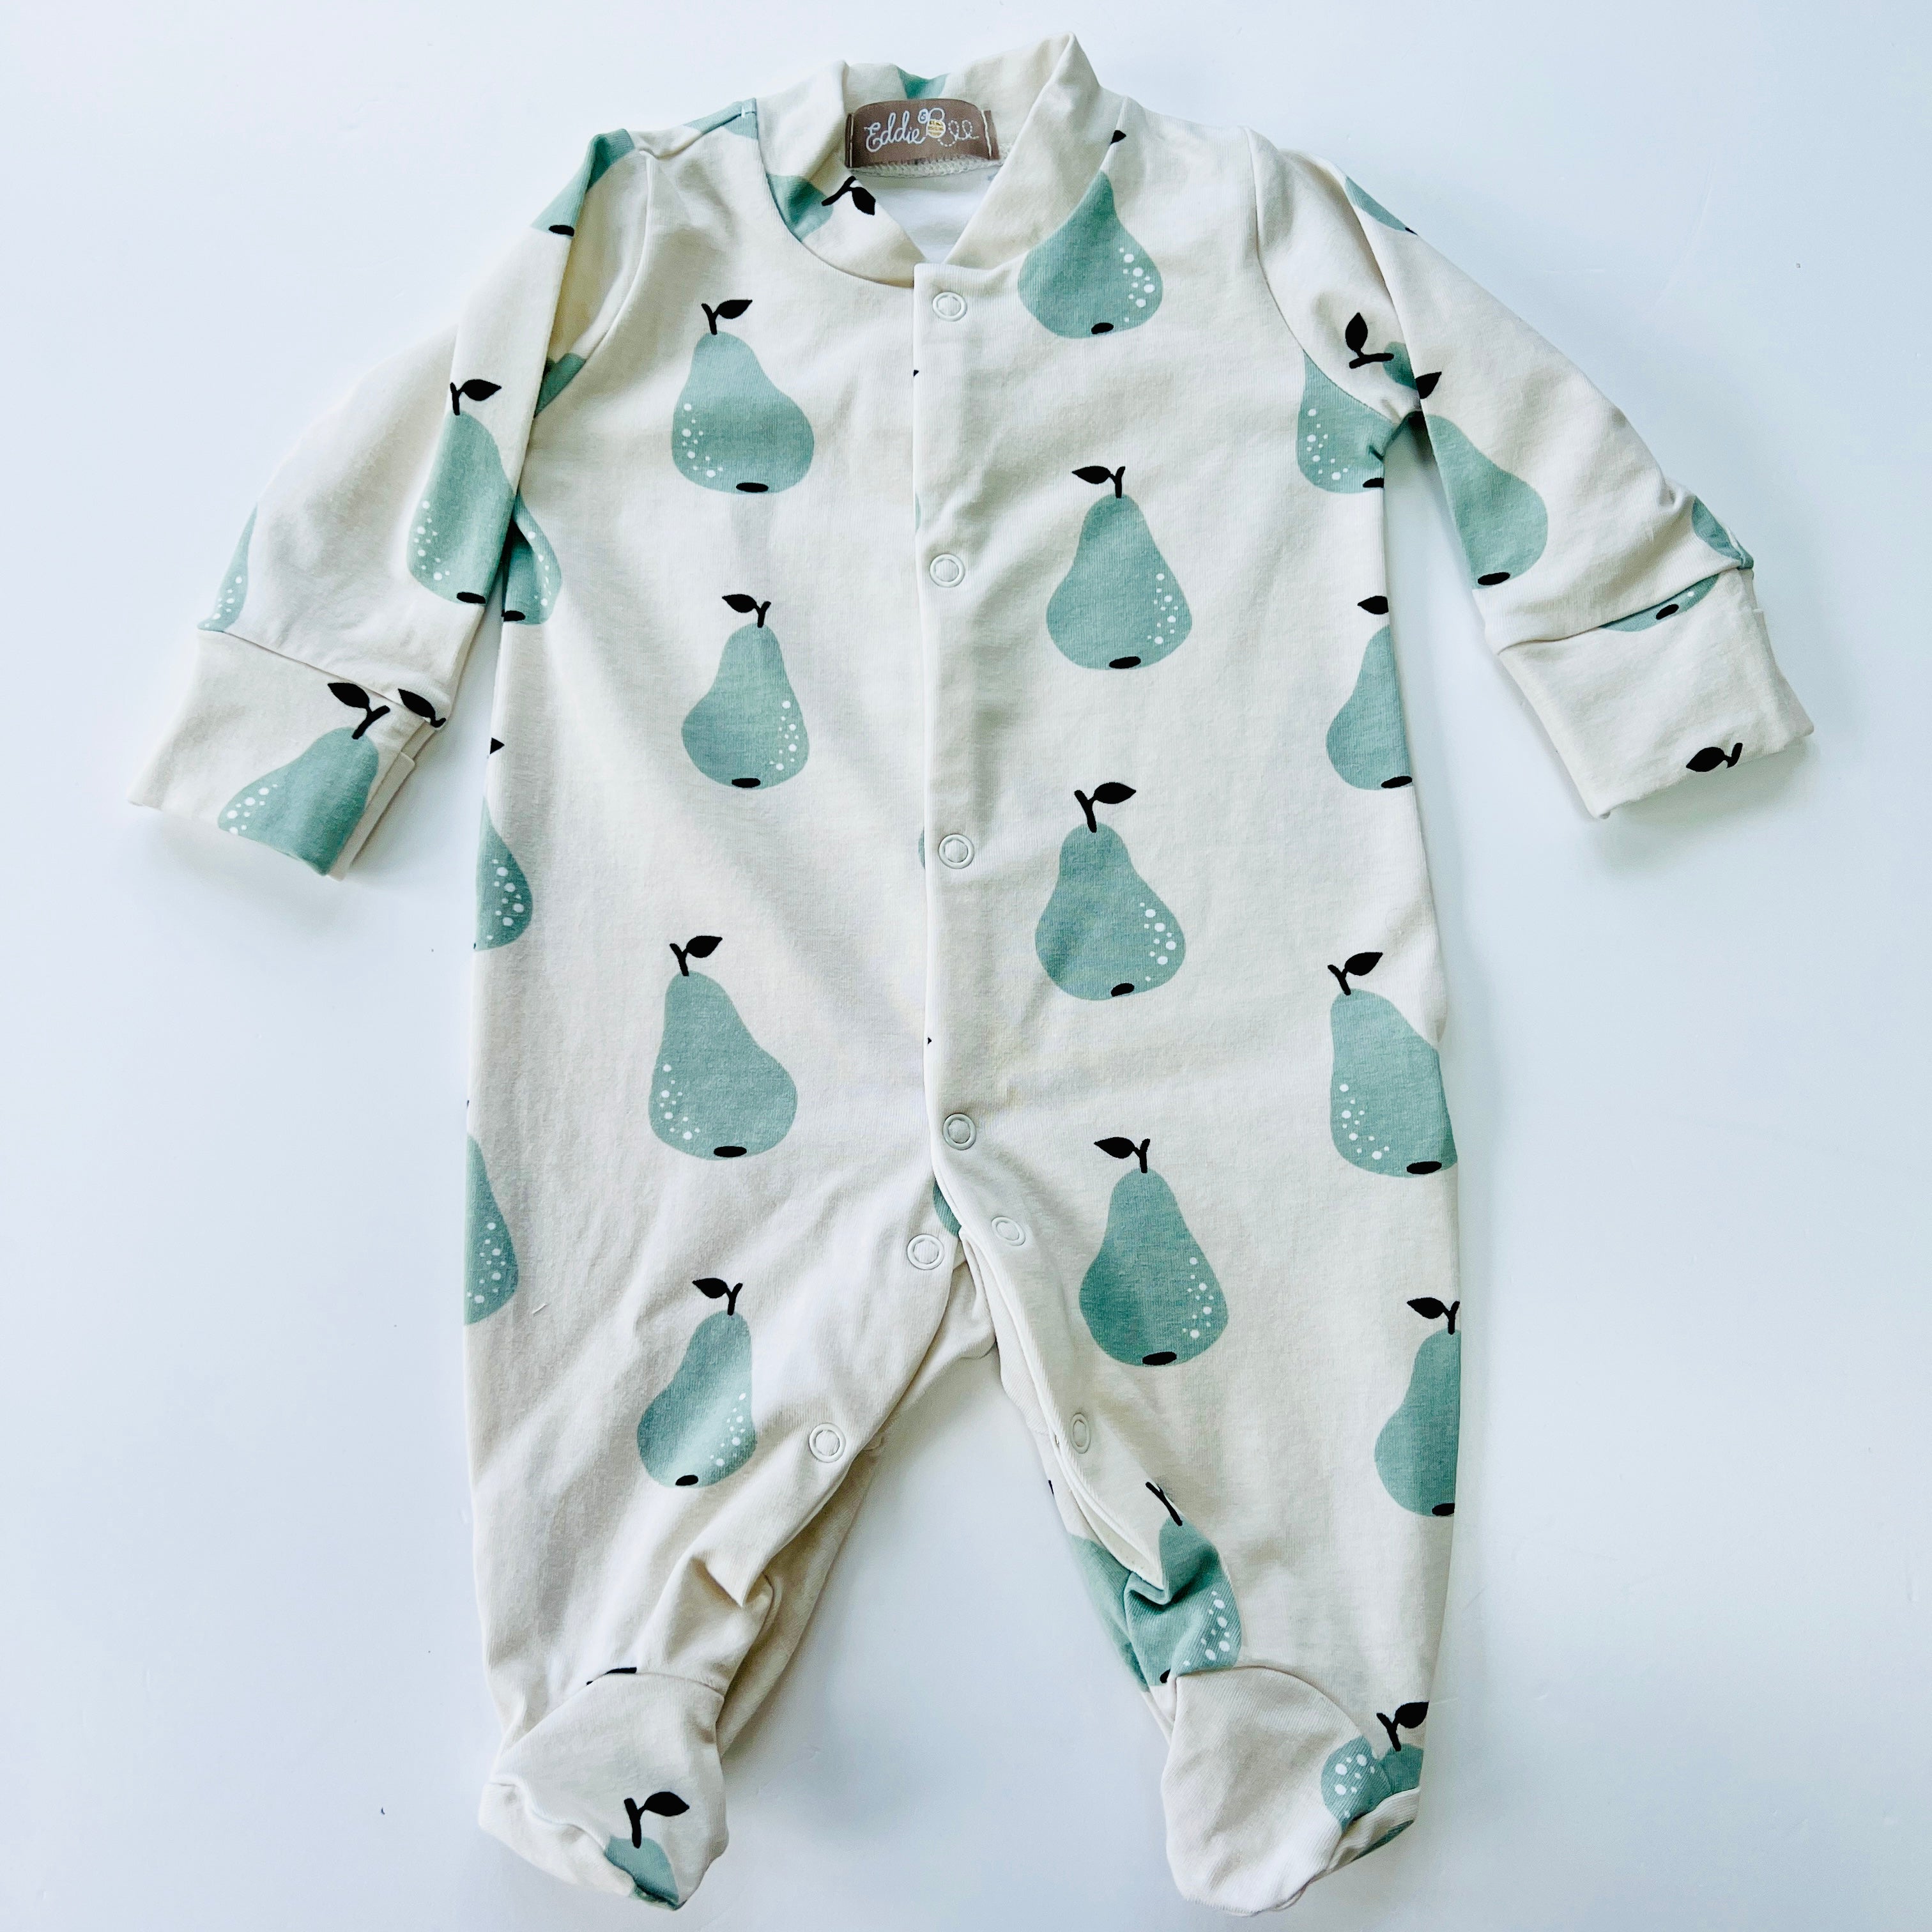 Eddie & Bee organic cotton Baby sleepsuit  in Oat" Pear" print.